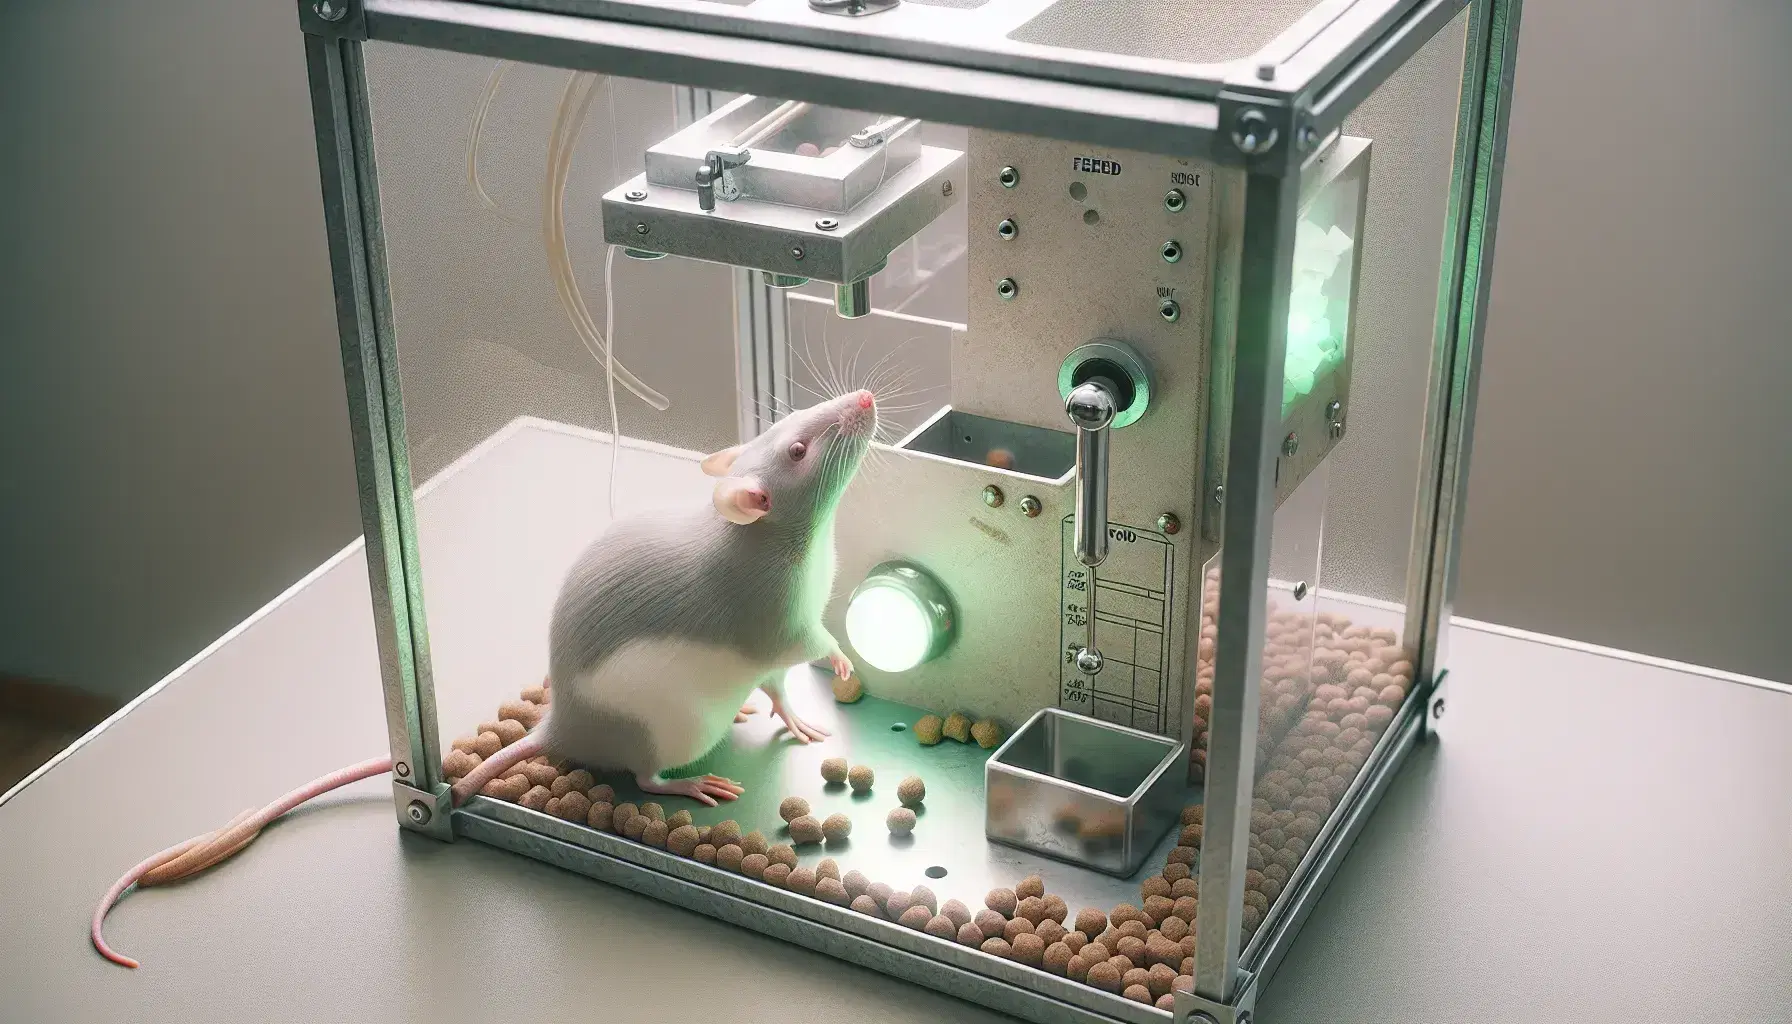 Rata gris claro en caja de Skinner con palanca metálica y dispensador de comida, de pie tocando la palanca y luz verde al lado.